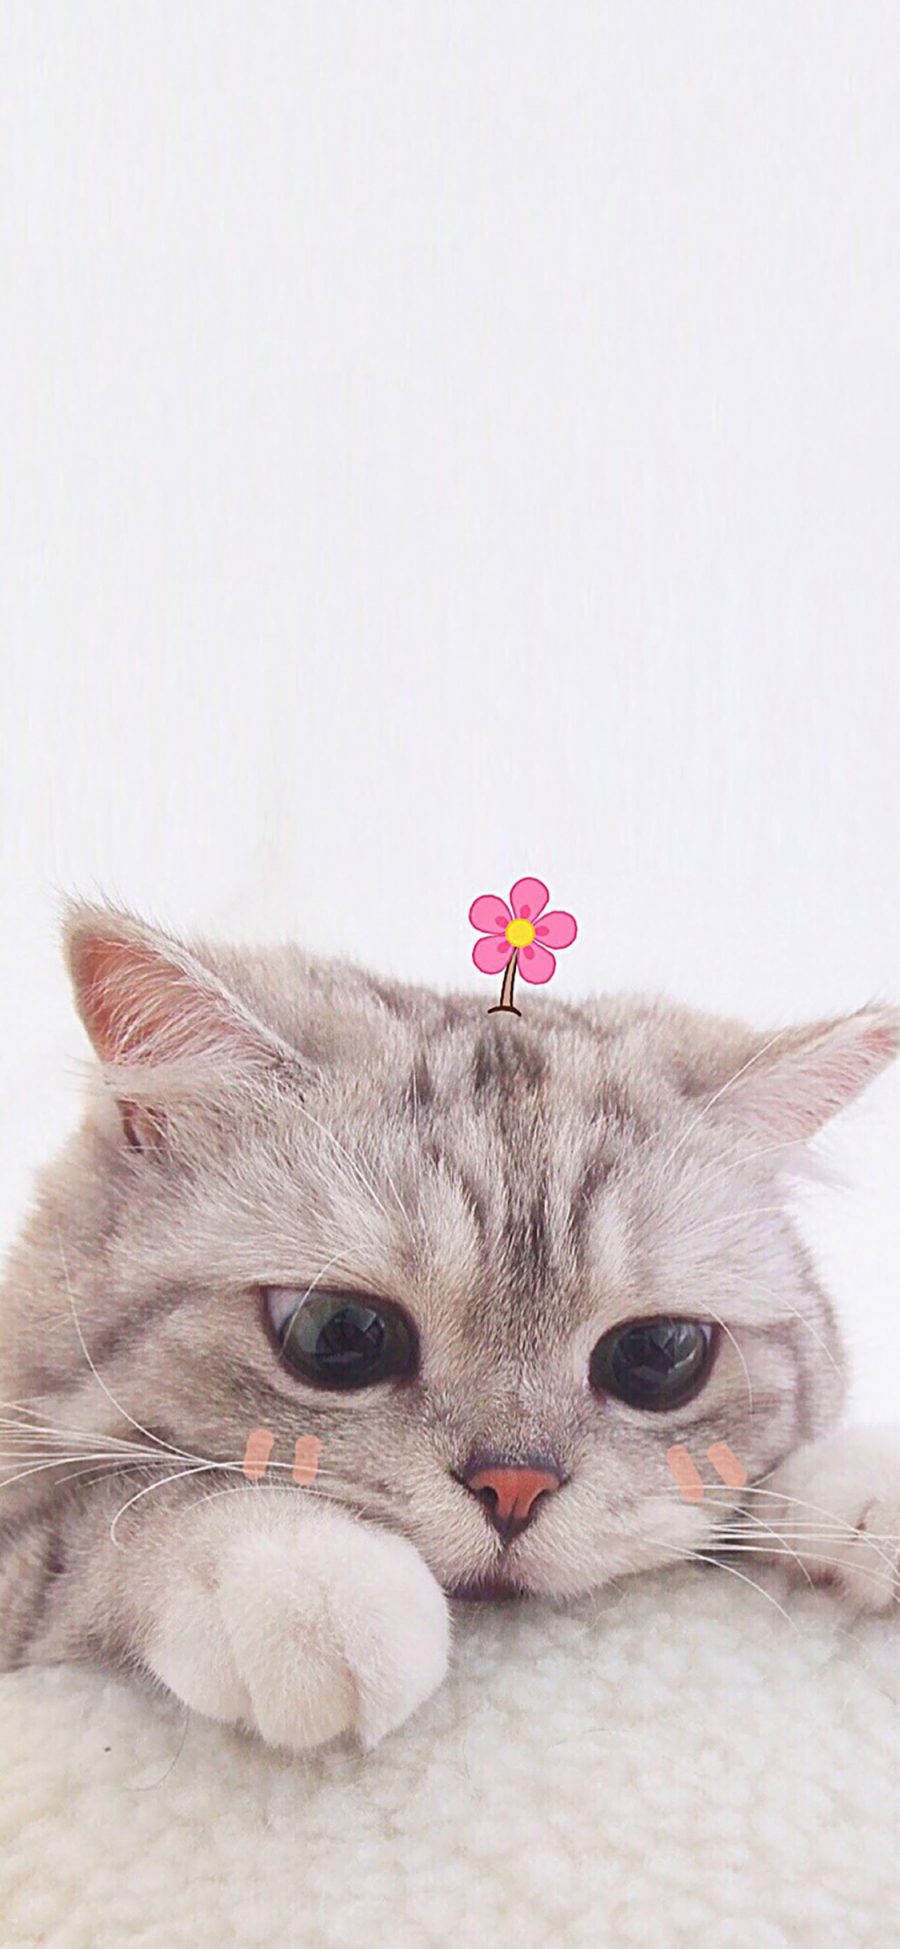 [2436×1125]宠物猫 猫咪 可爱 小花花 苹果手机壁纸图片